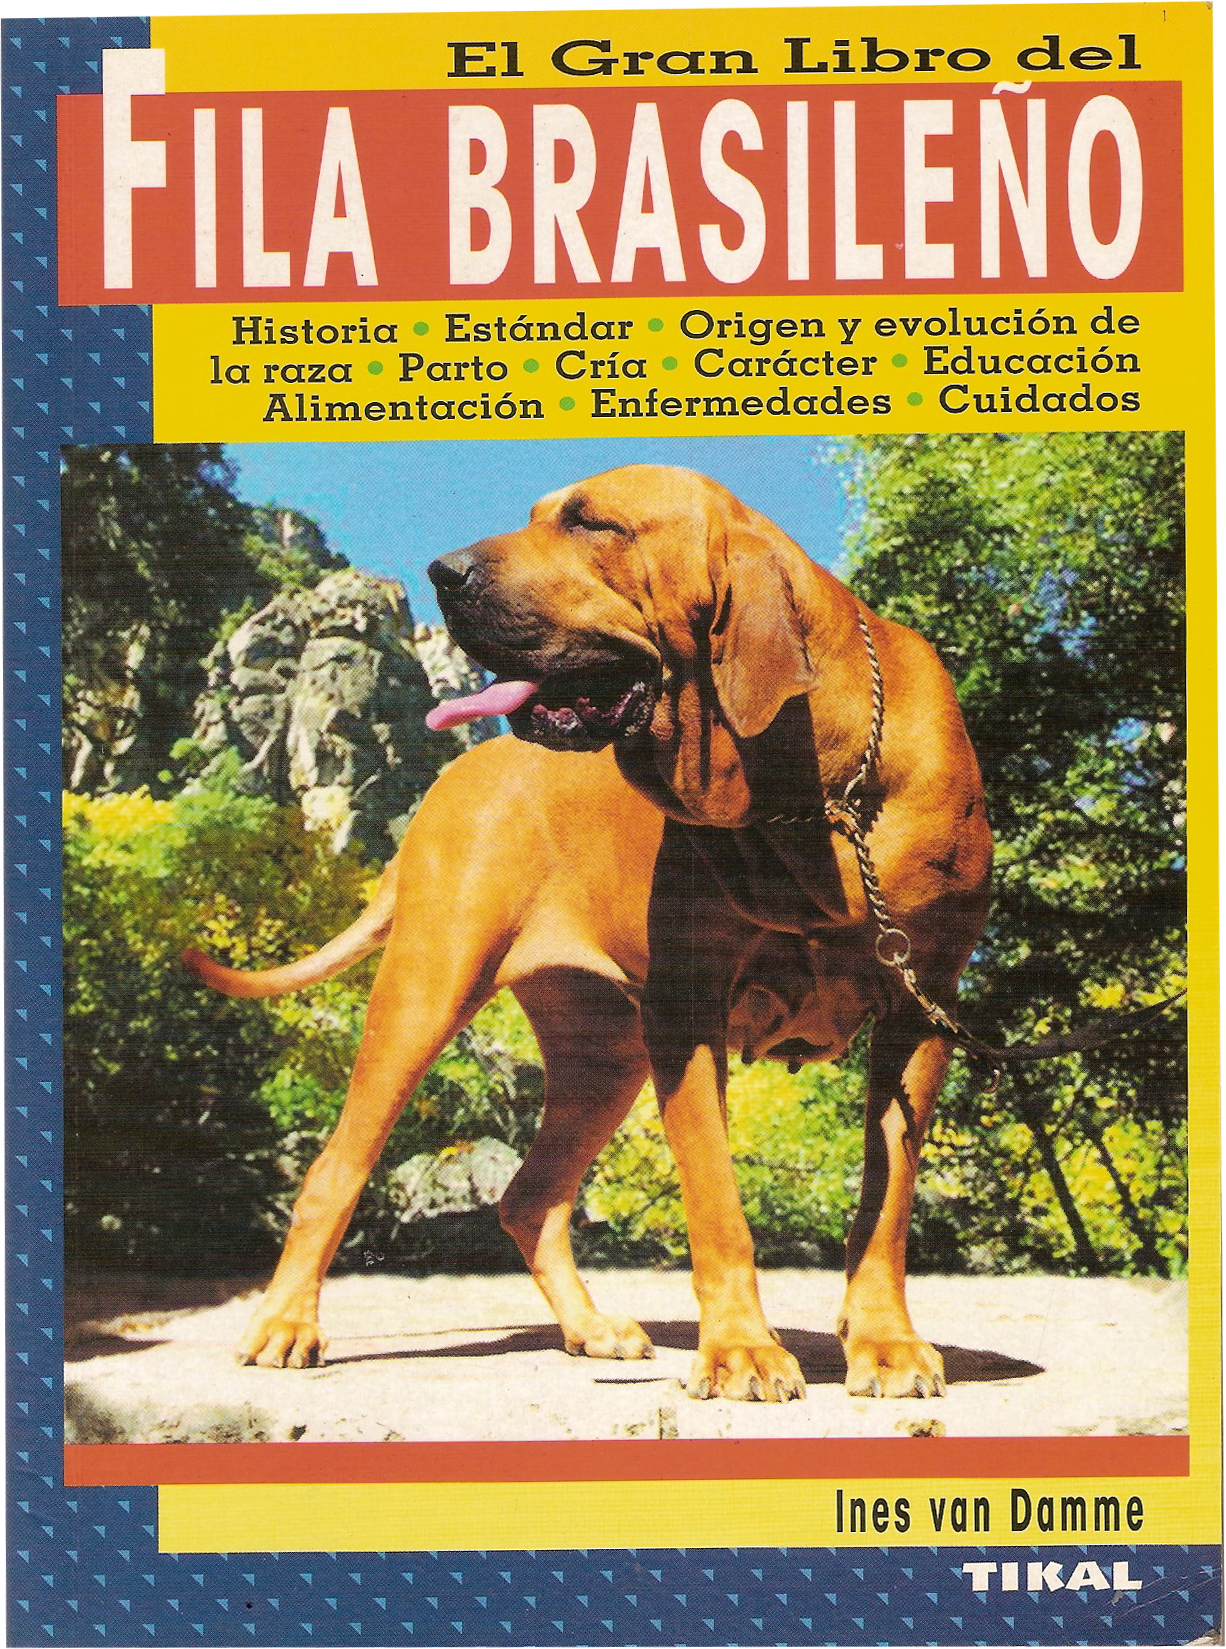 Cão Fila Brasileiro, genuinamente santista - Memória Santista